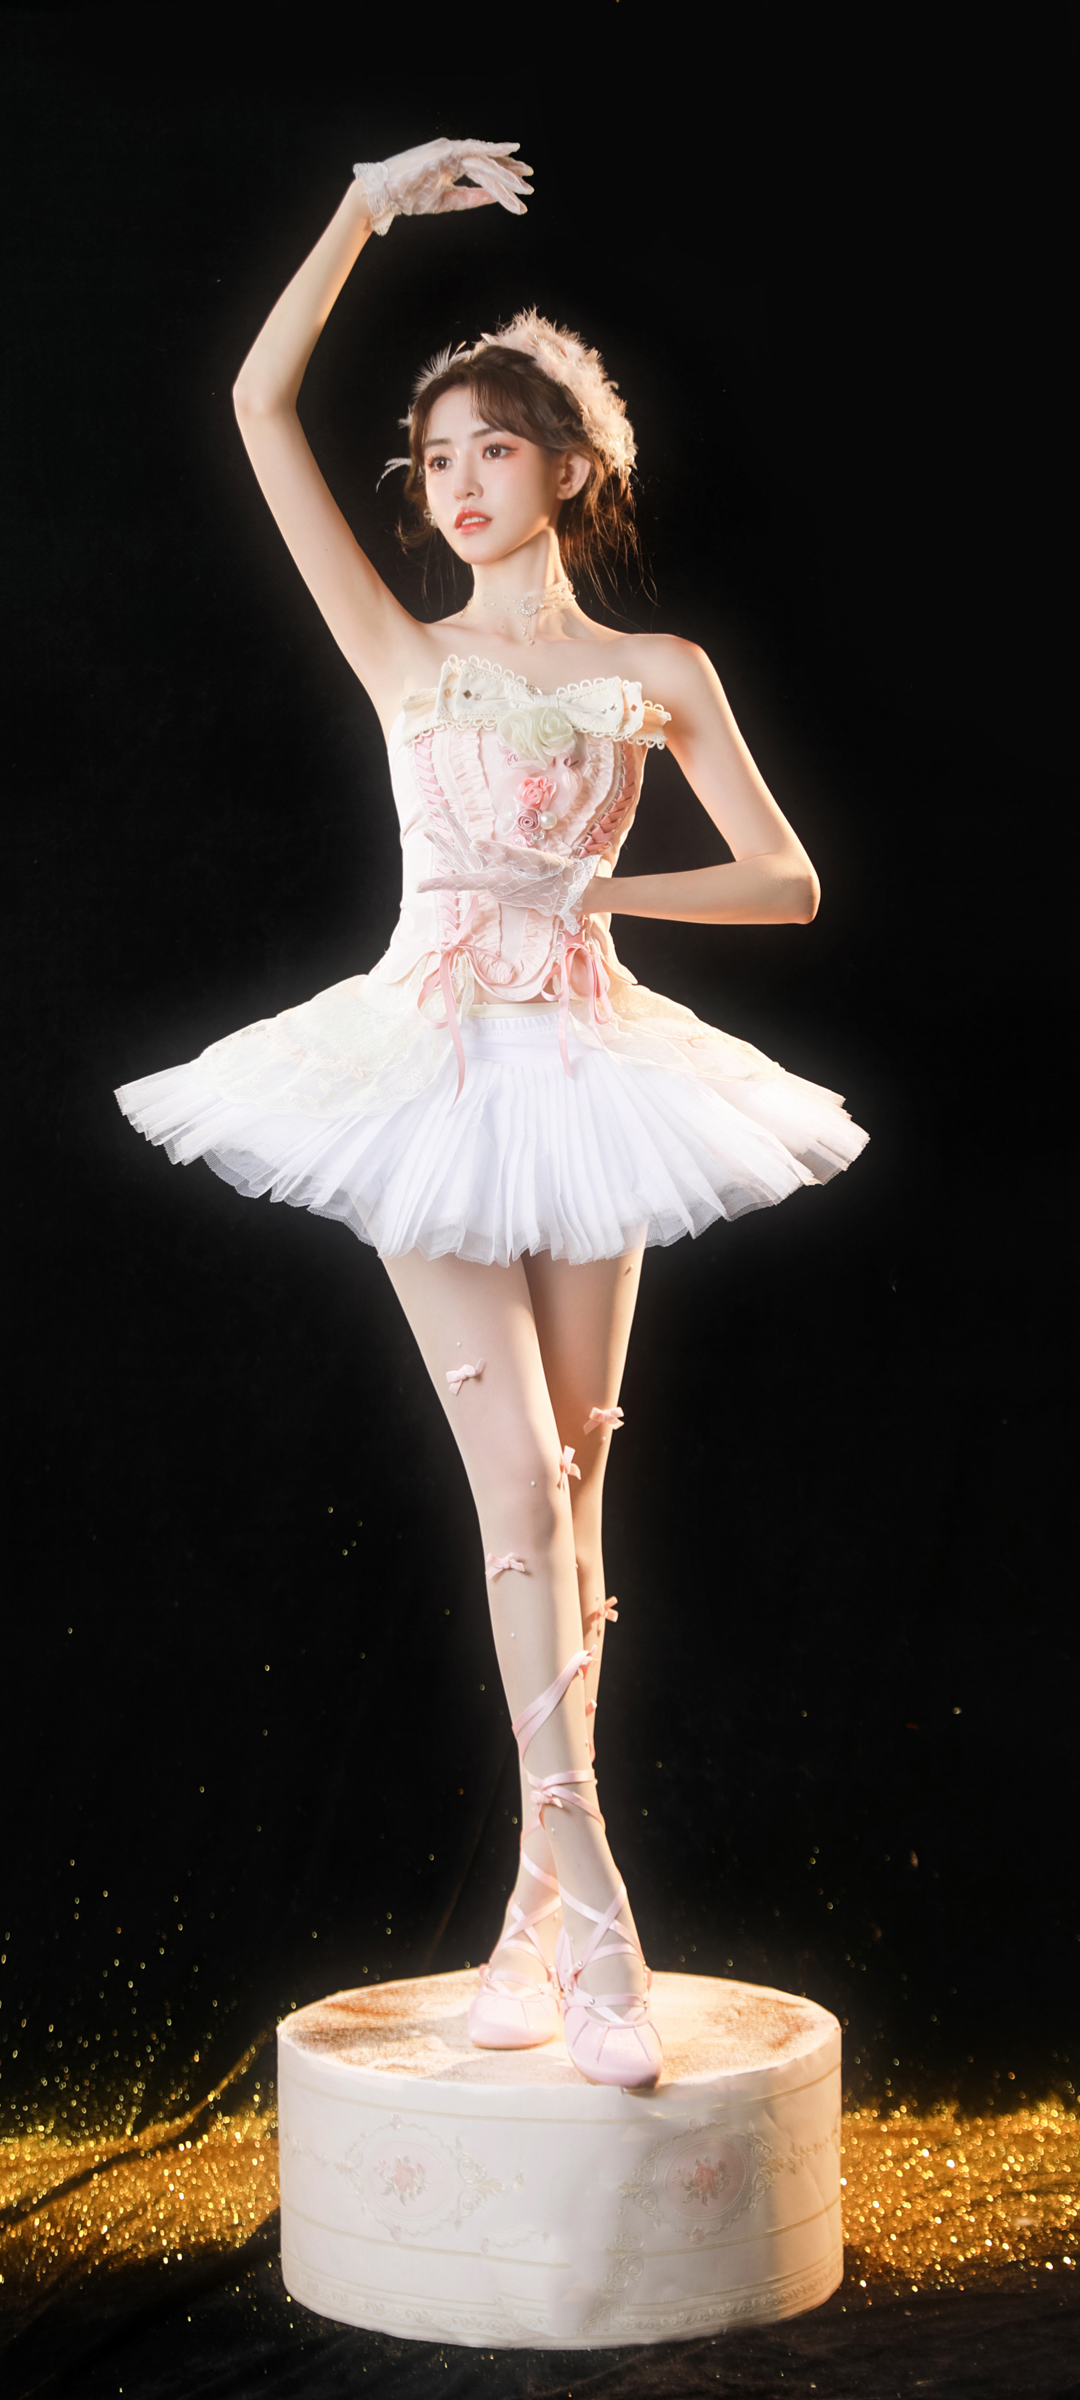 绝美芭蕾舞者壁纸，免费下载高清手机美图